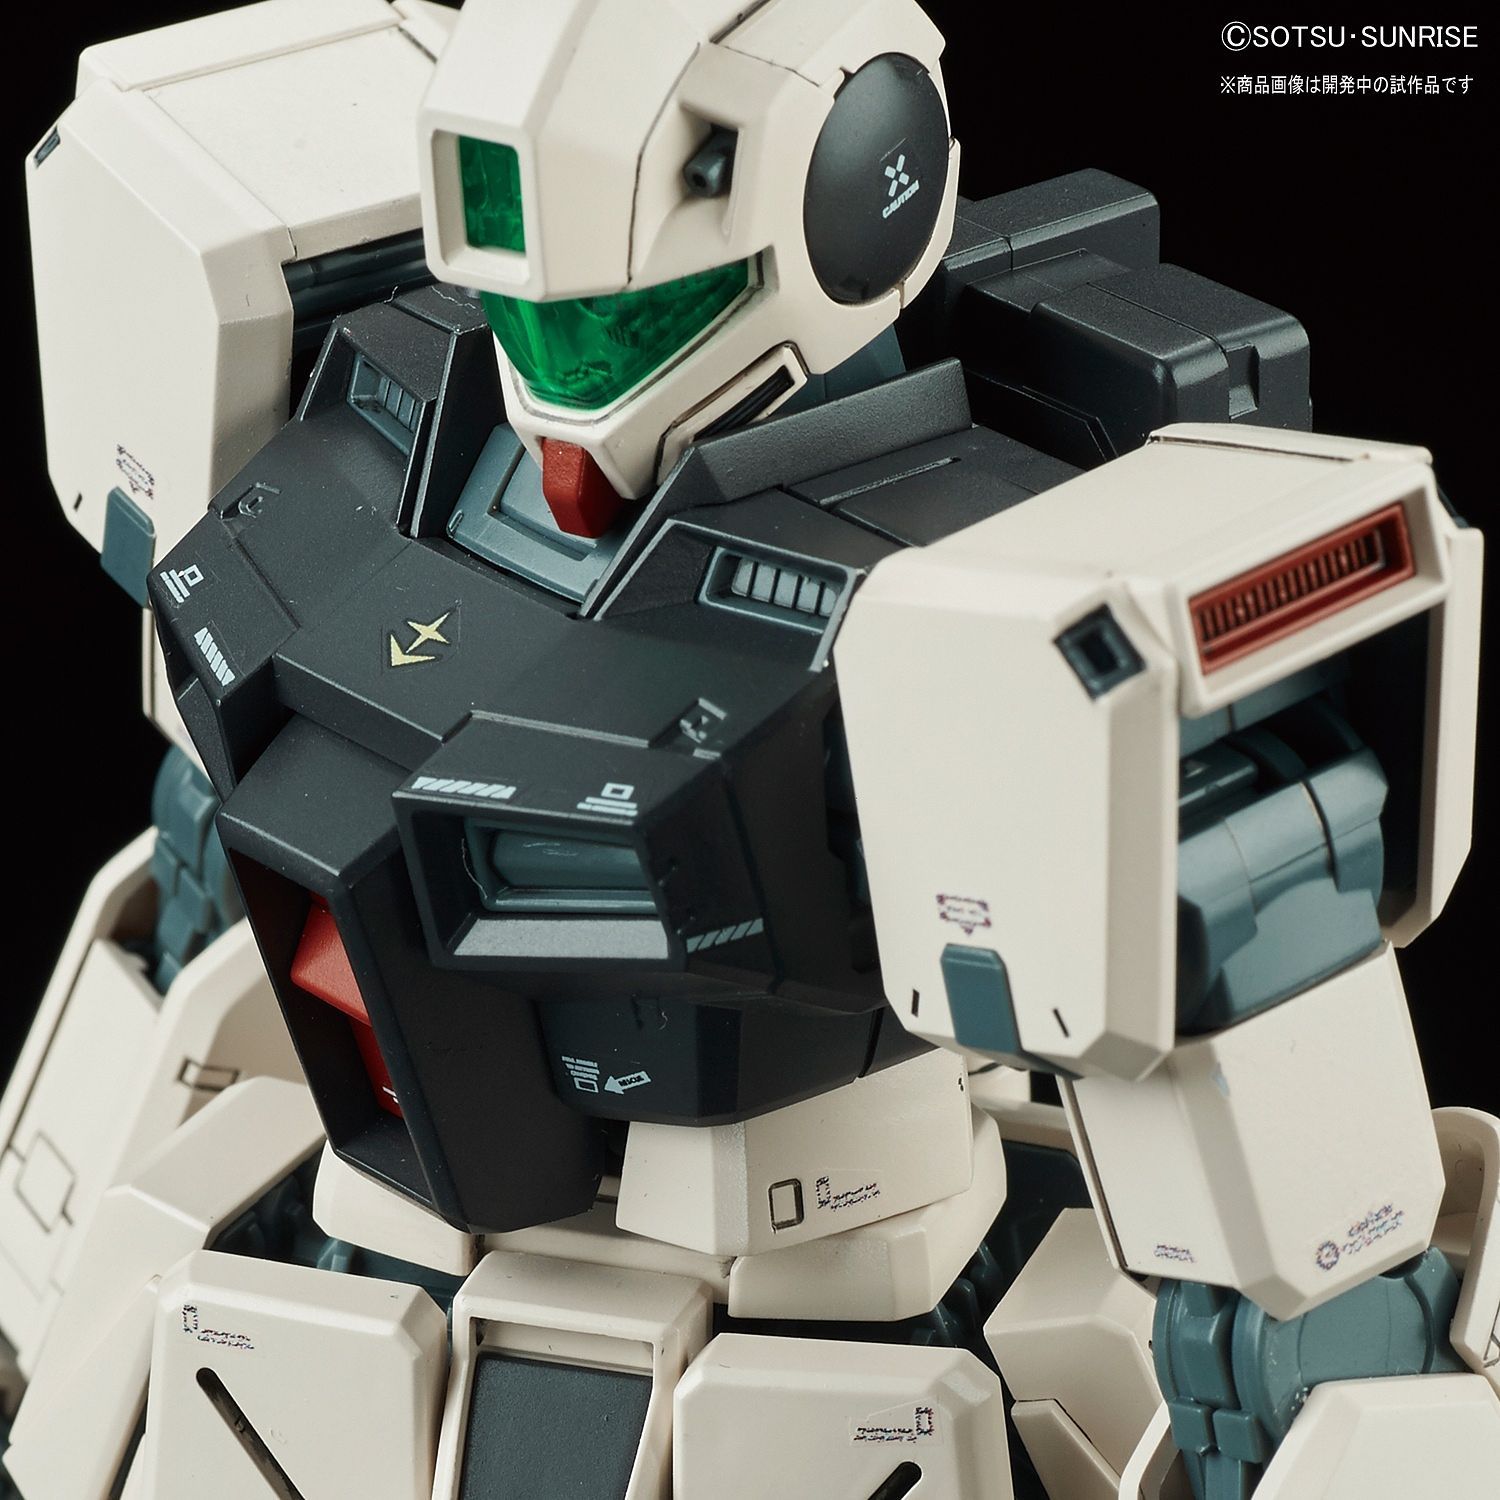 MG Gundam GM Command (Colony Type) 1/100 - gundam-store.dk